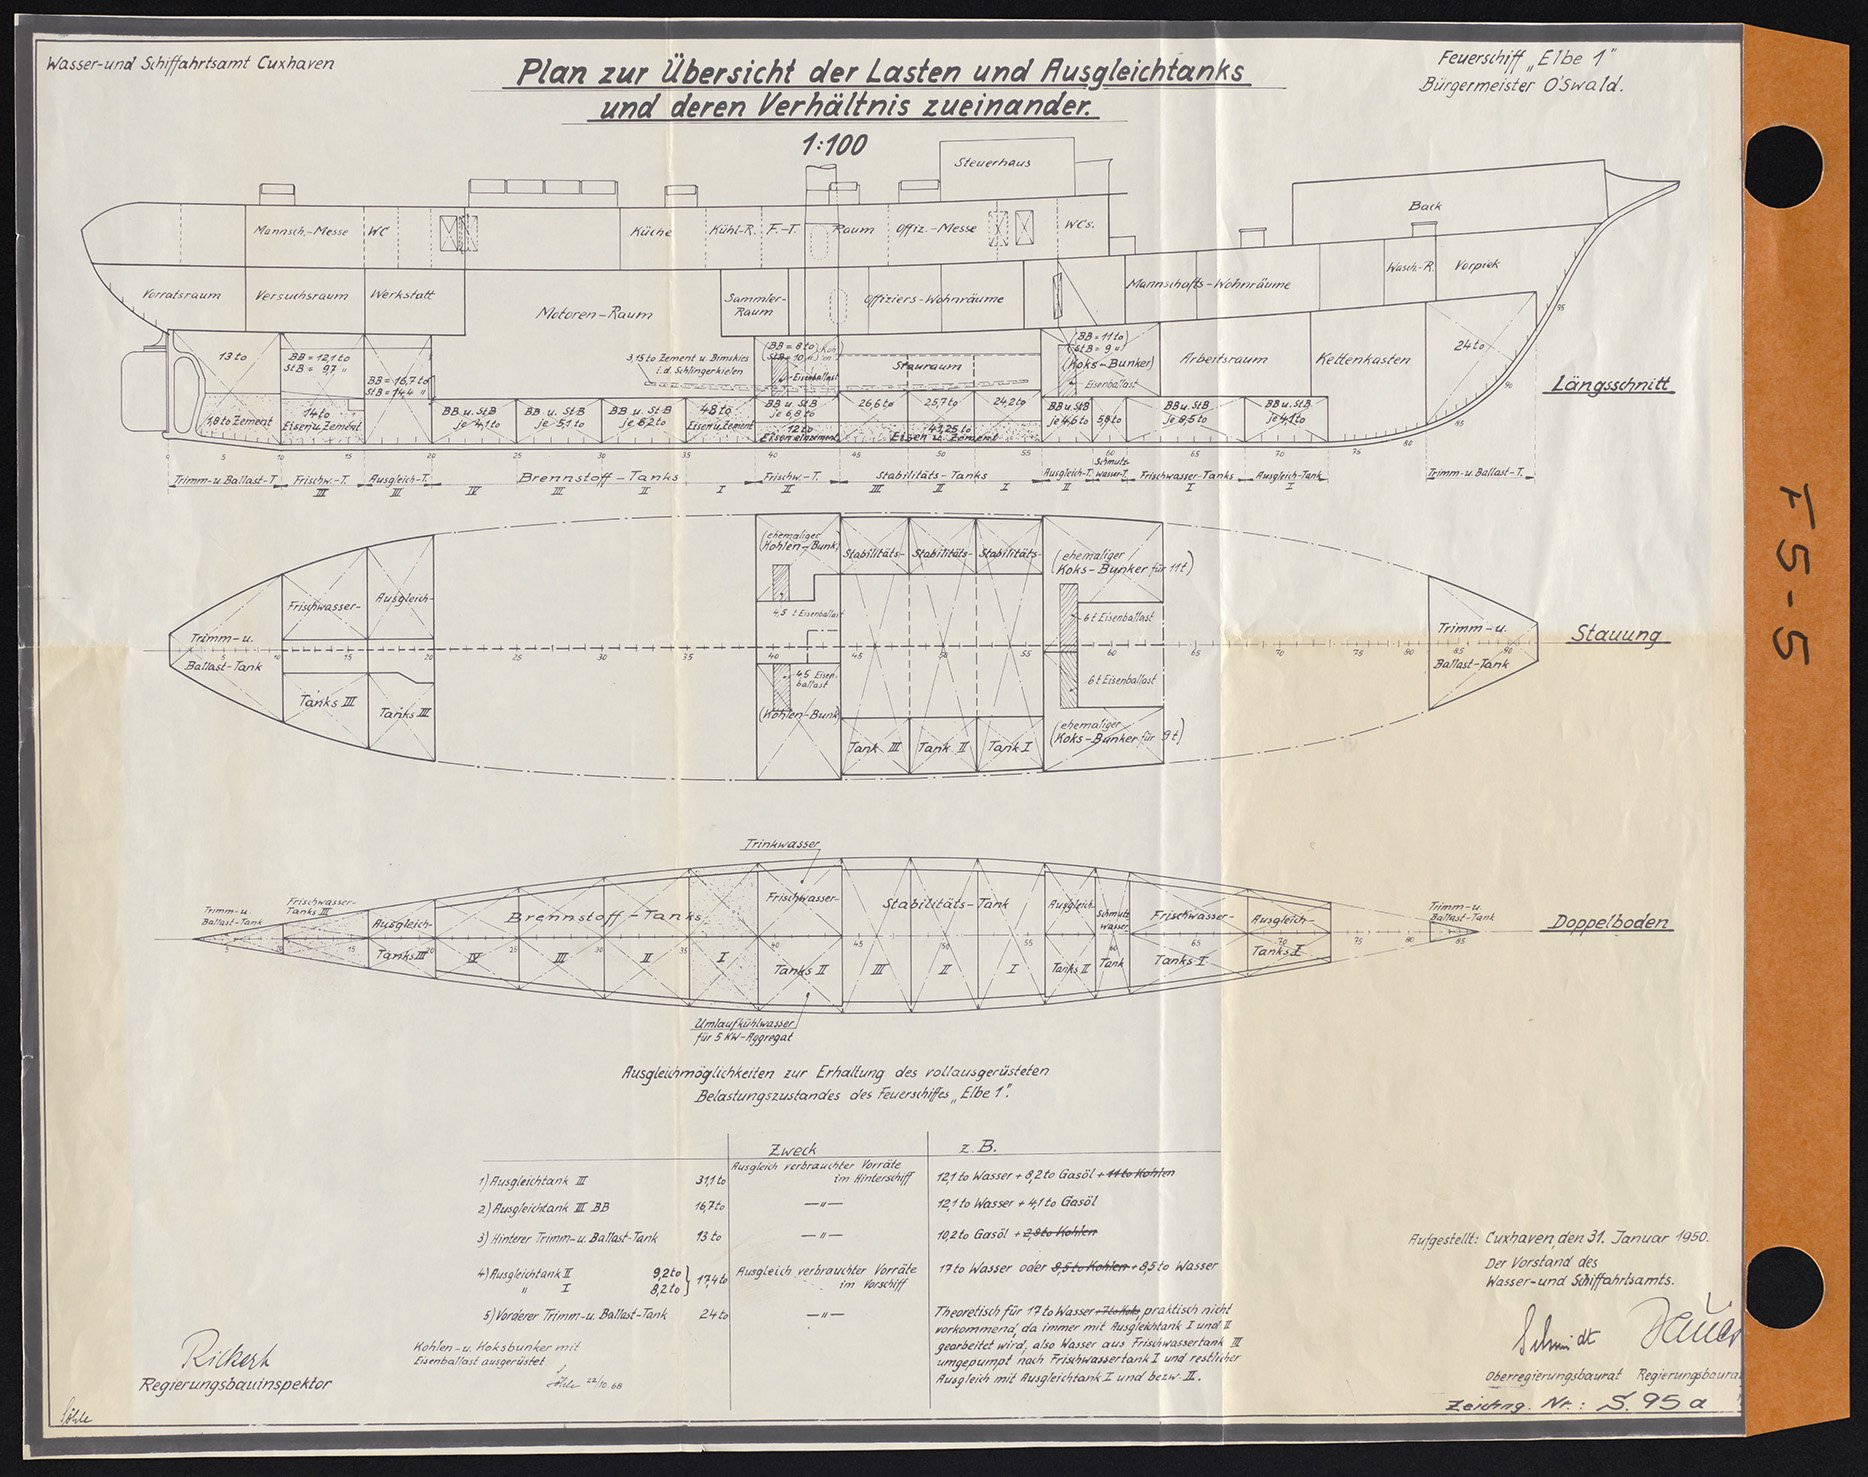 Feuerschiff Bürgermeister O'Swald II (ELBE I) - "Plan zur Übersicht der Lasten und Ausgleichstanks" - 31.01.1950 (Schiffahrtsmuseum Unterweser CC BY-NC-SA)